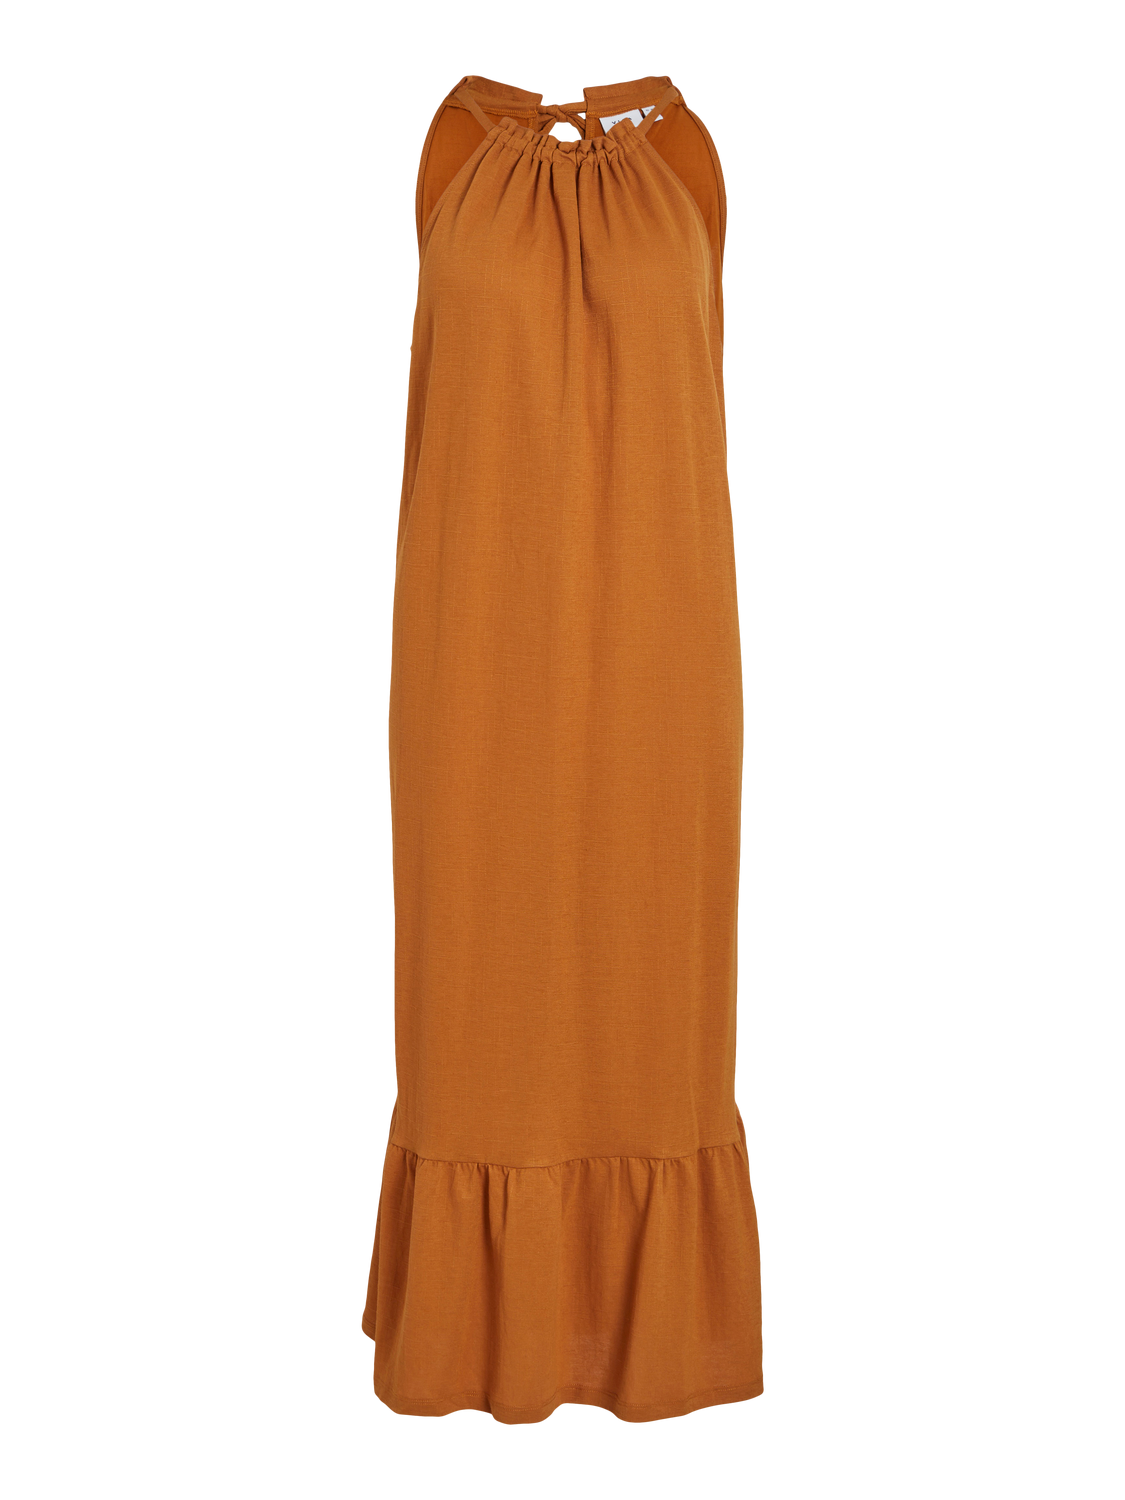 VICARMENA Dress - Cathay Spice